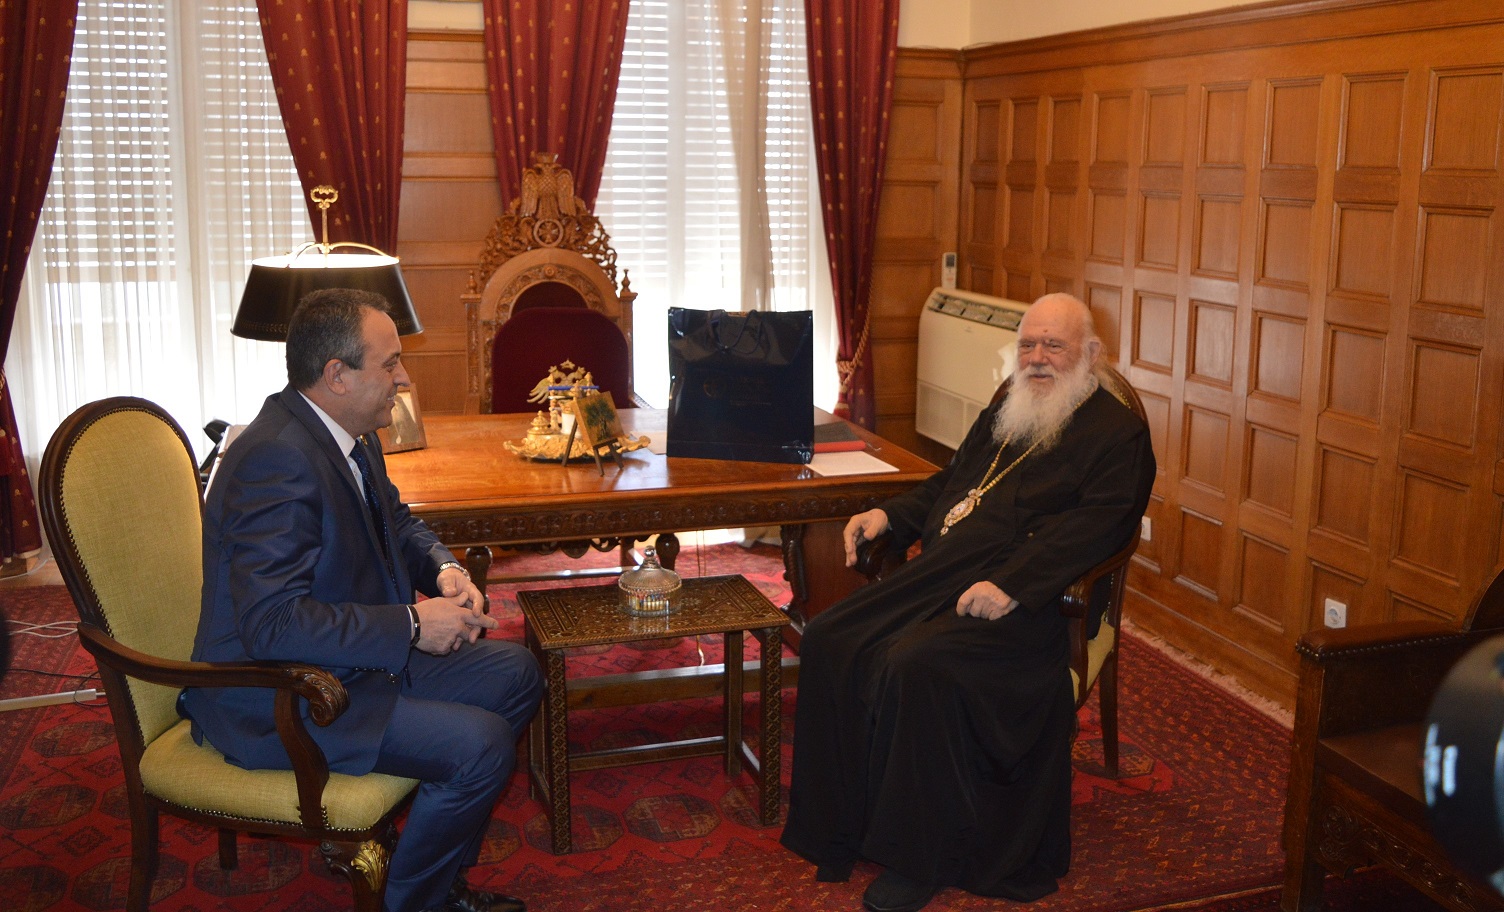 Συνάντηση με τον Αρχιεπίσκοπο Ιερώνυμο είχε ο πρόεδρος των “Σπαρτιατών” Β. Στίγκας